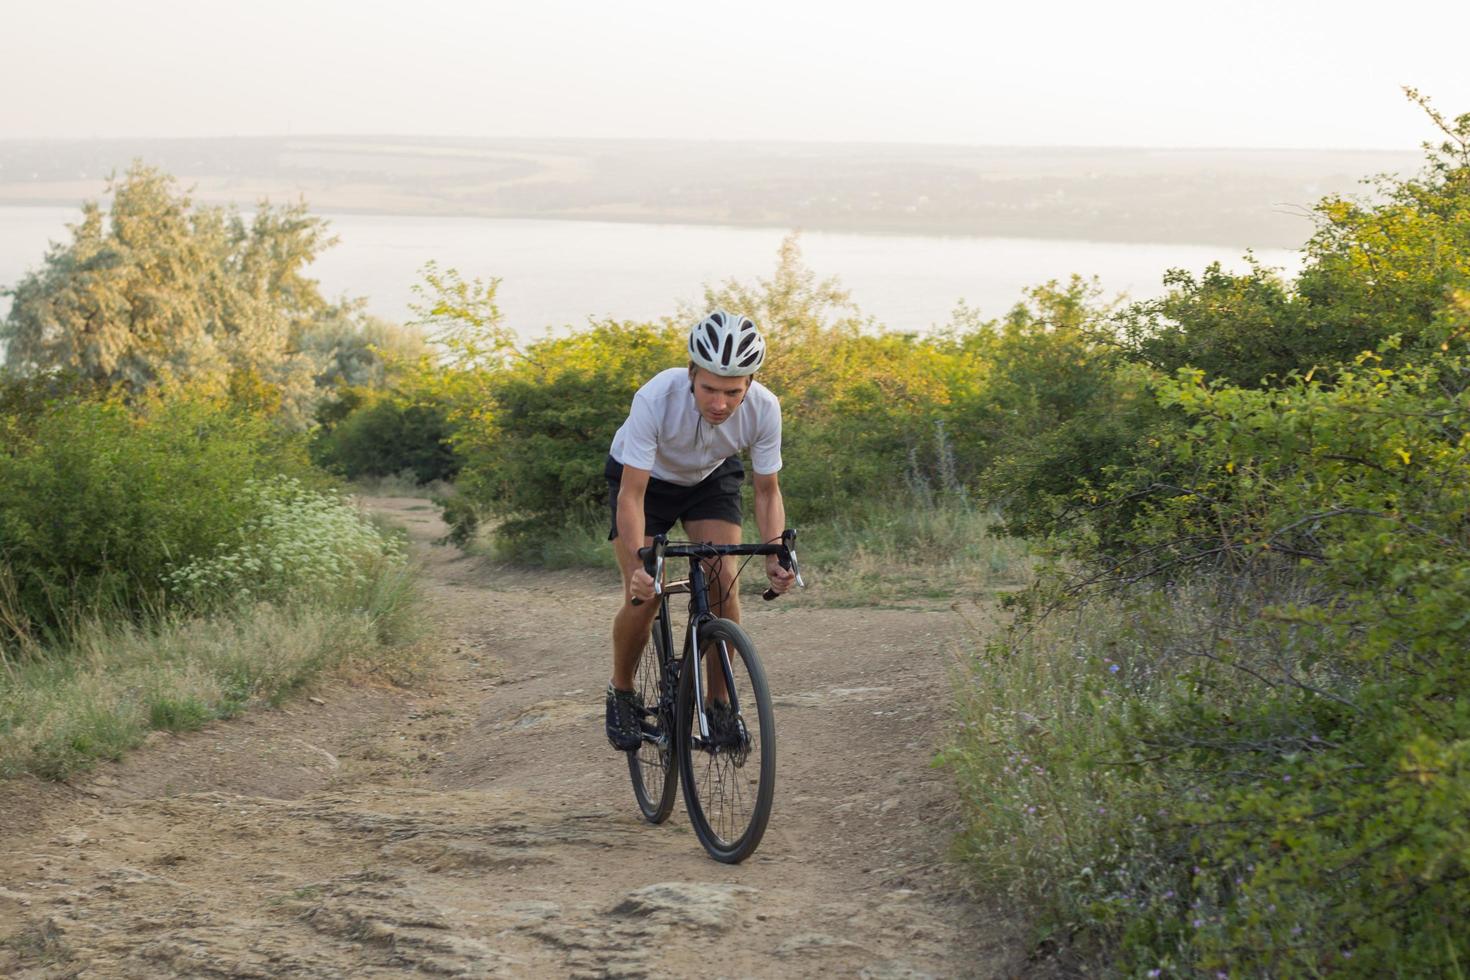 ciclista em passeio de bicicleta de ciclocross profissional em declive, pinheiro e fundo do lago foto